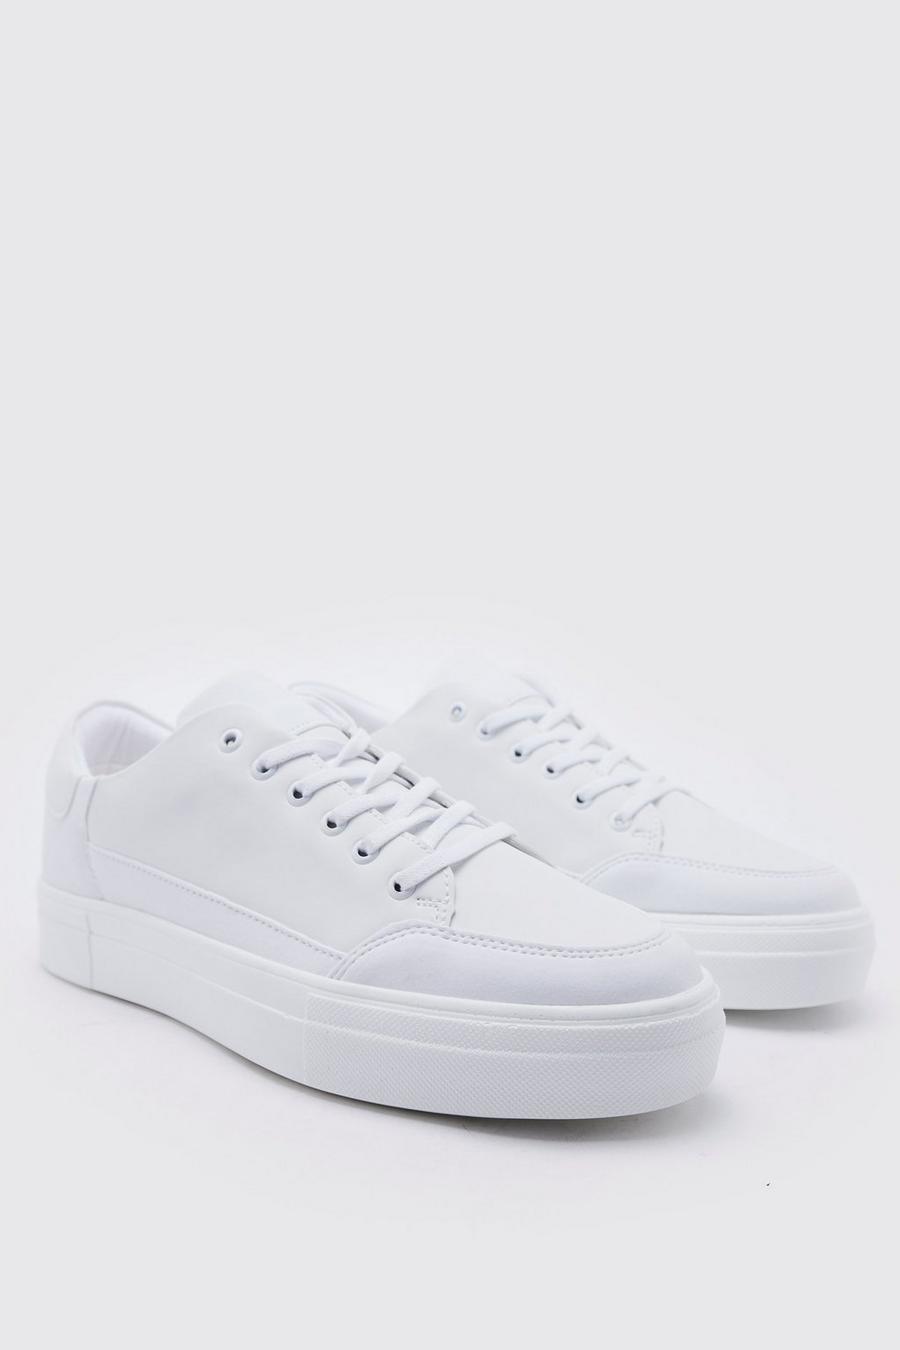 Smarte Kunstleder-Sneaker, White blanc